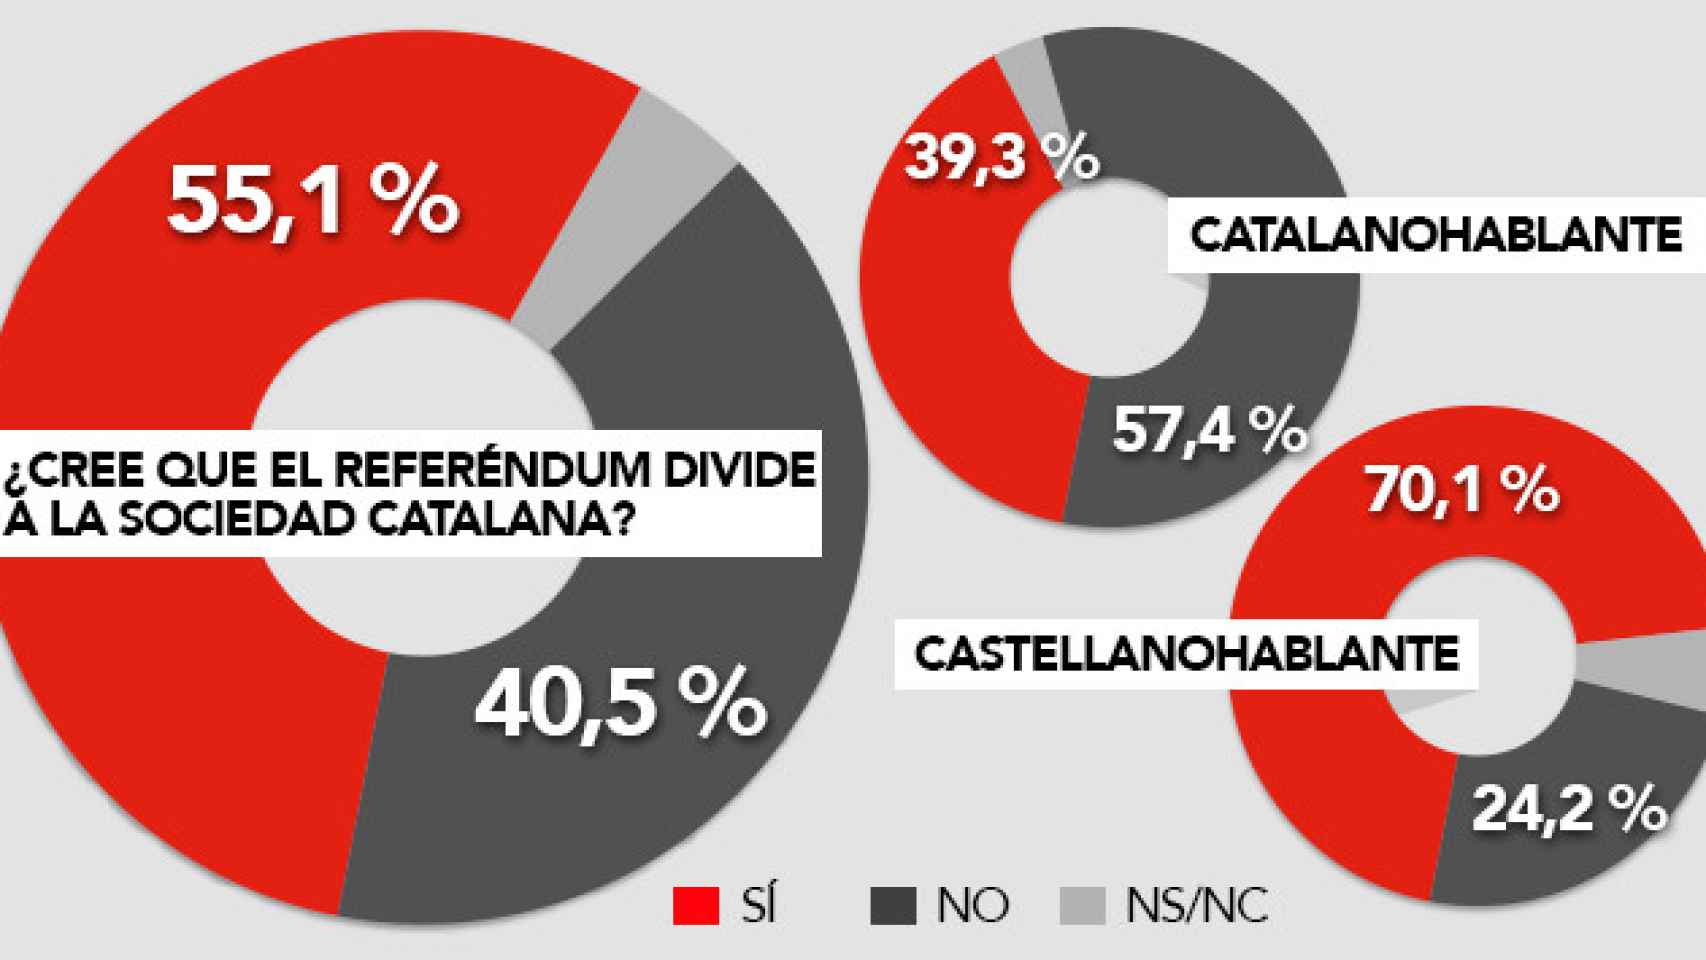 La mayoría de los catalanes cree que el referéndum divide a la sociedad / CG